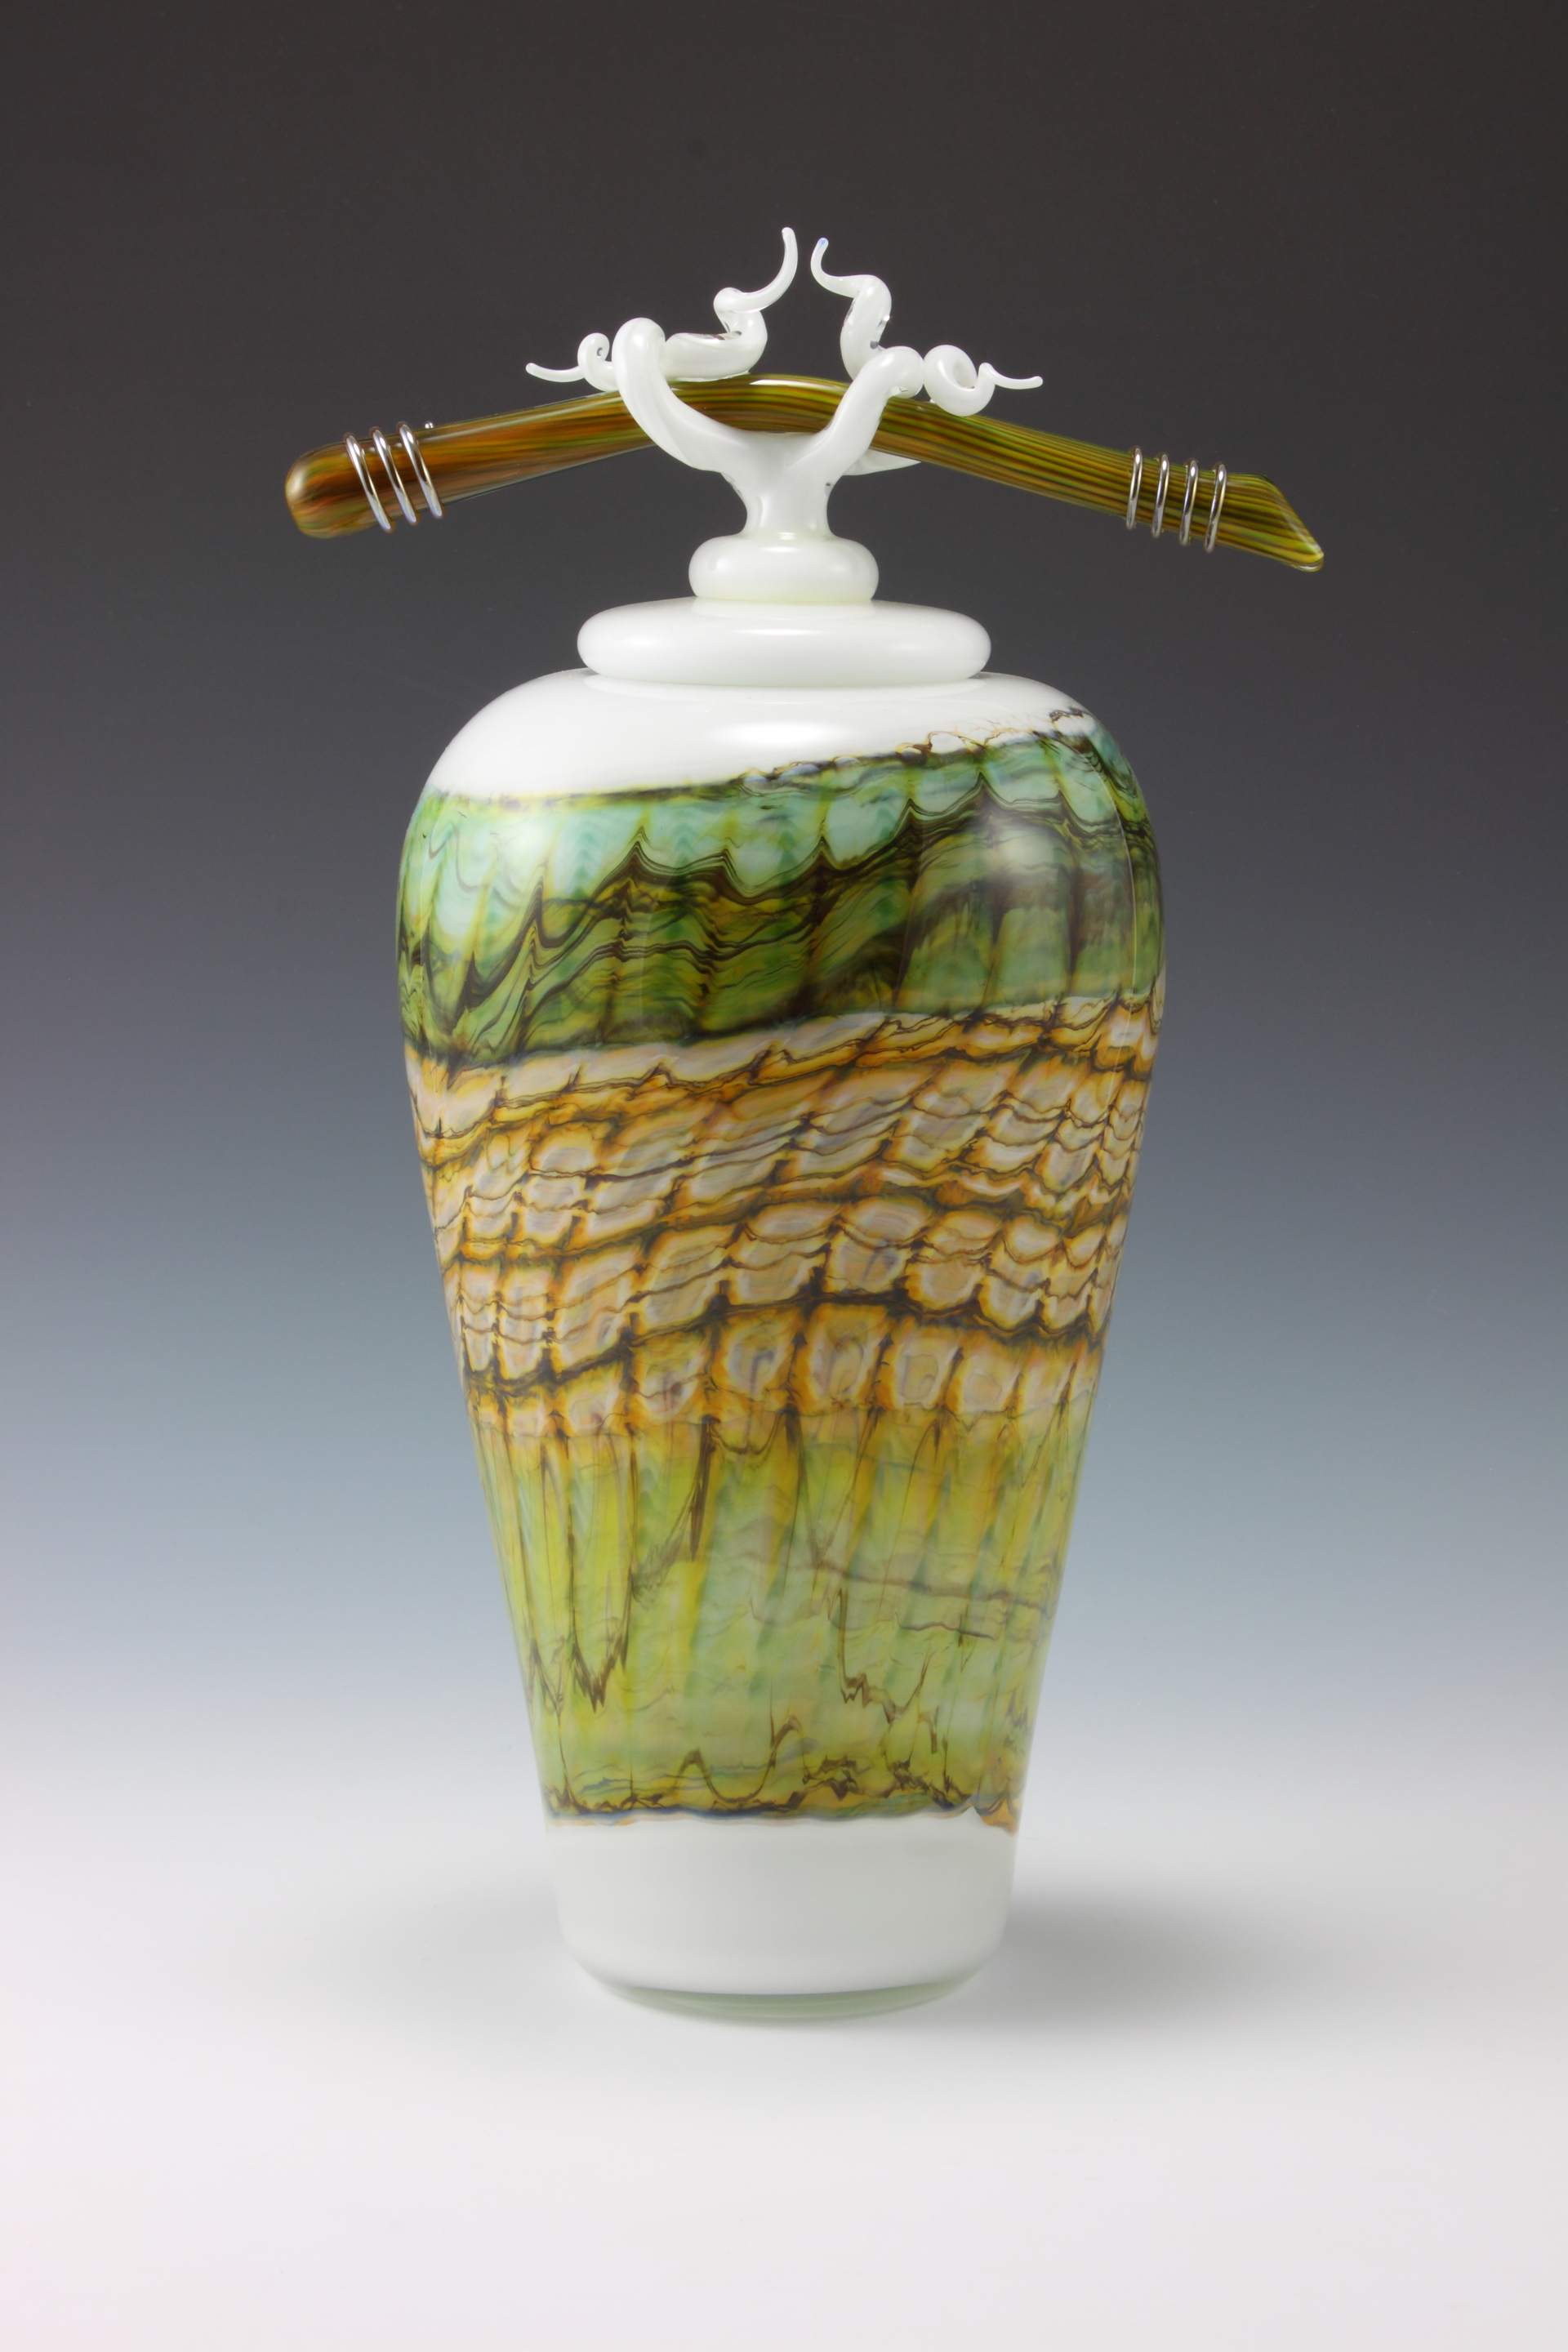 Vases by Danielle Blade Stephen Gartner